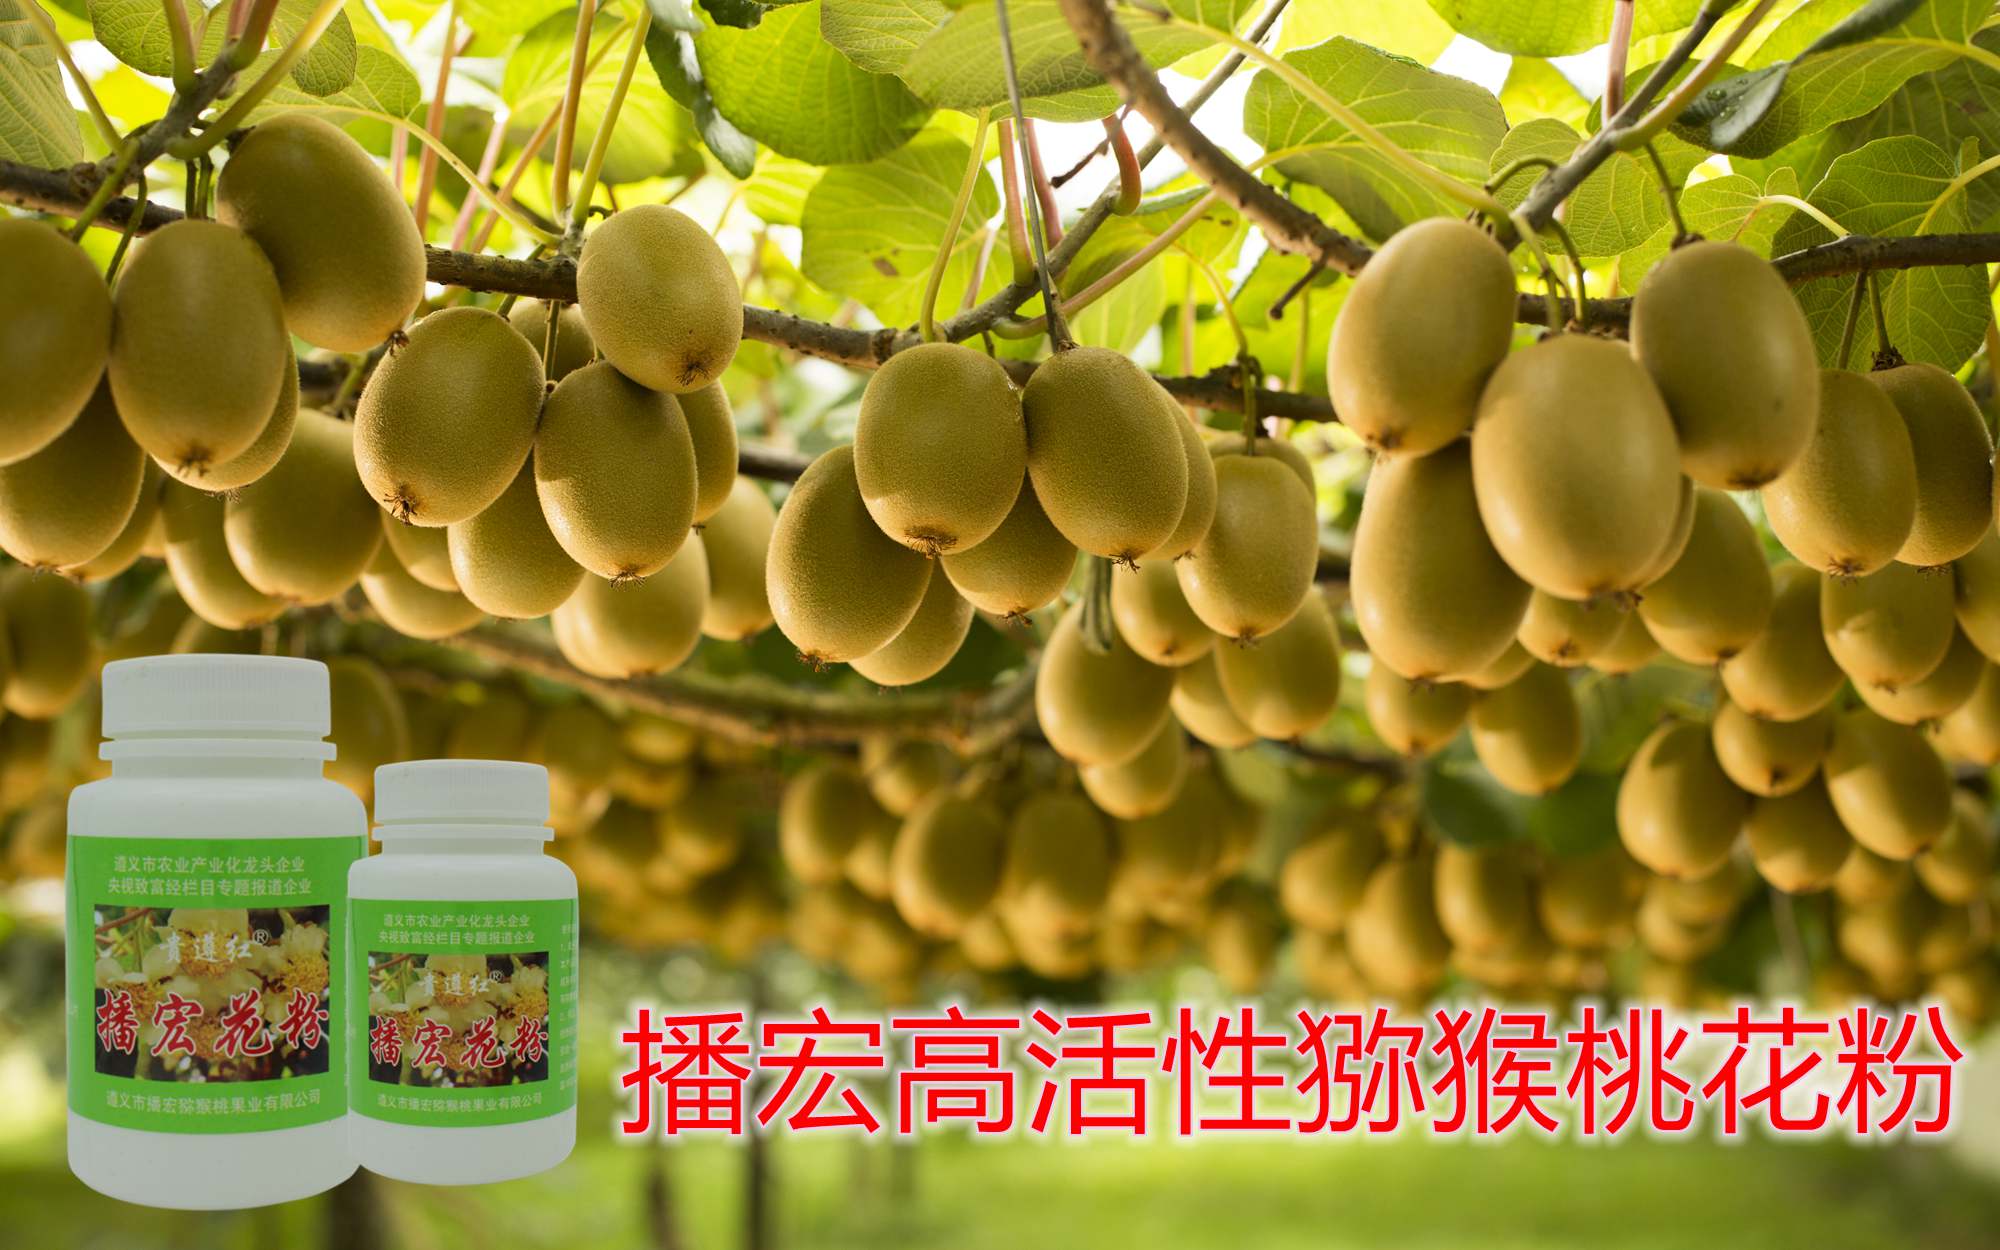 贵州独山县猕猴桃陆续成熟上市